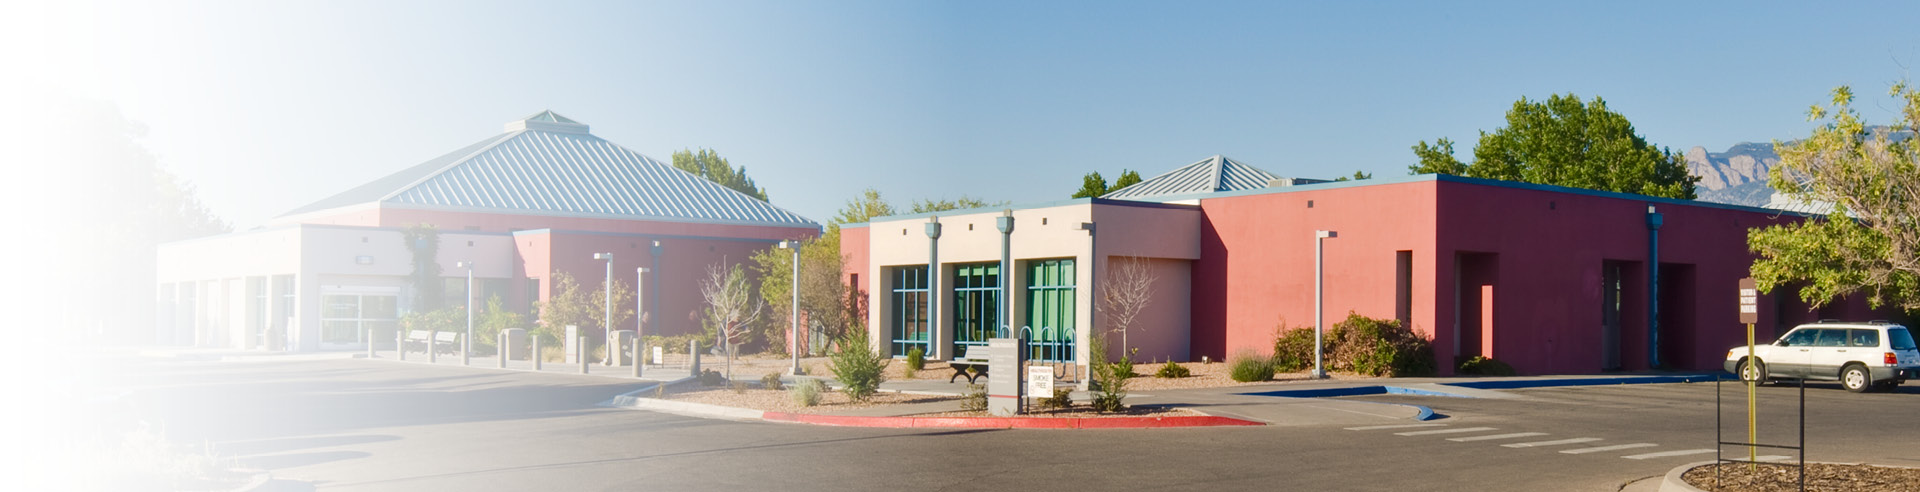  Encompass Health Rehabilitation Hospital of Albuquerque